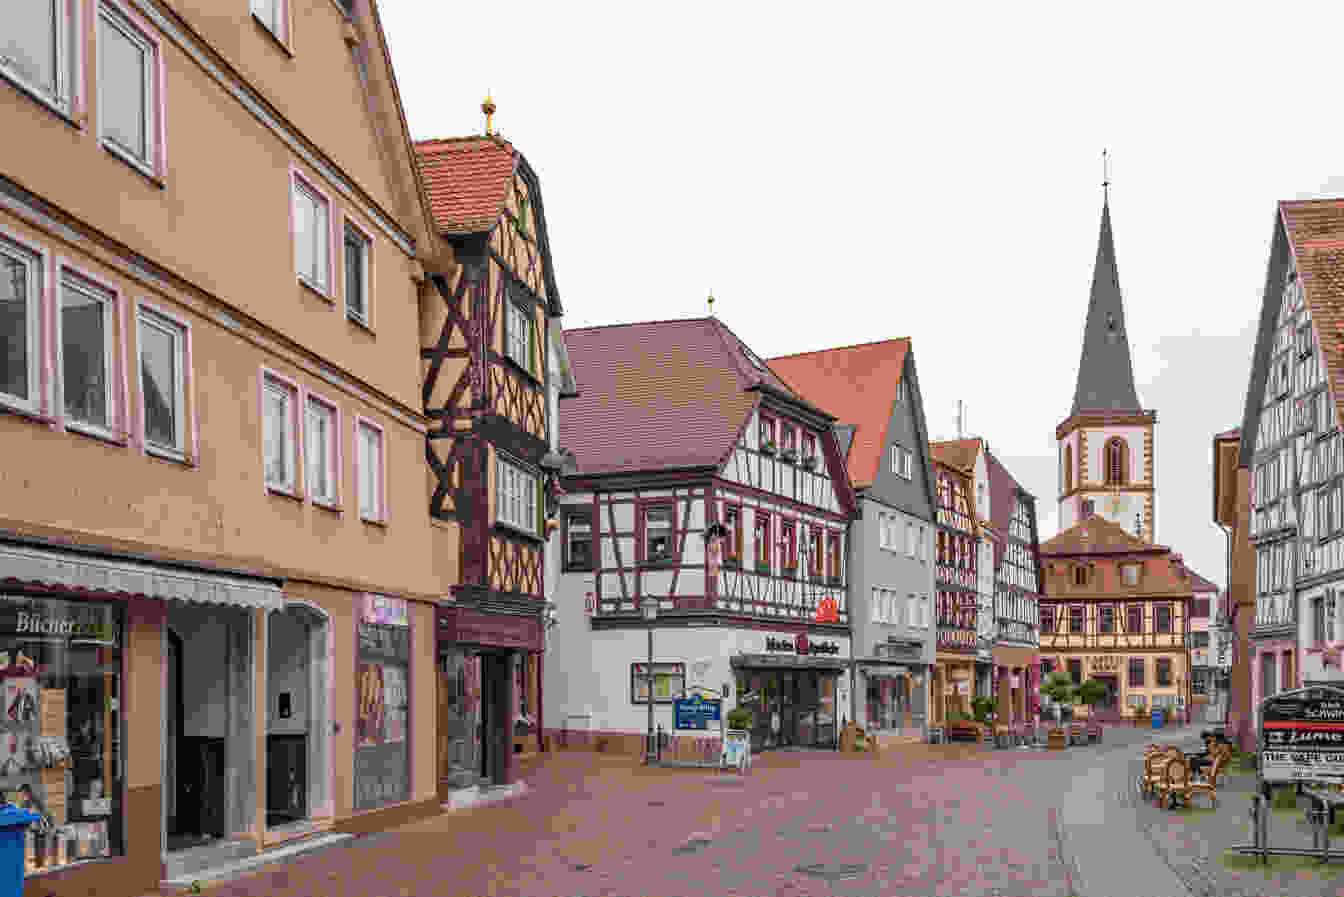 Bild der Stadt Lohr am Main